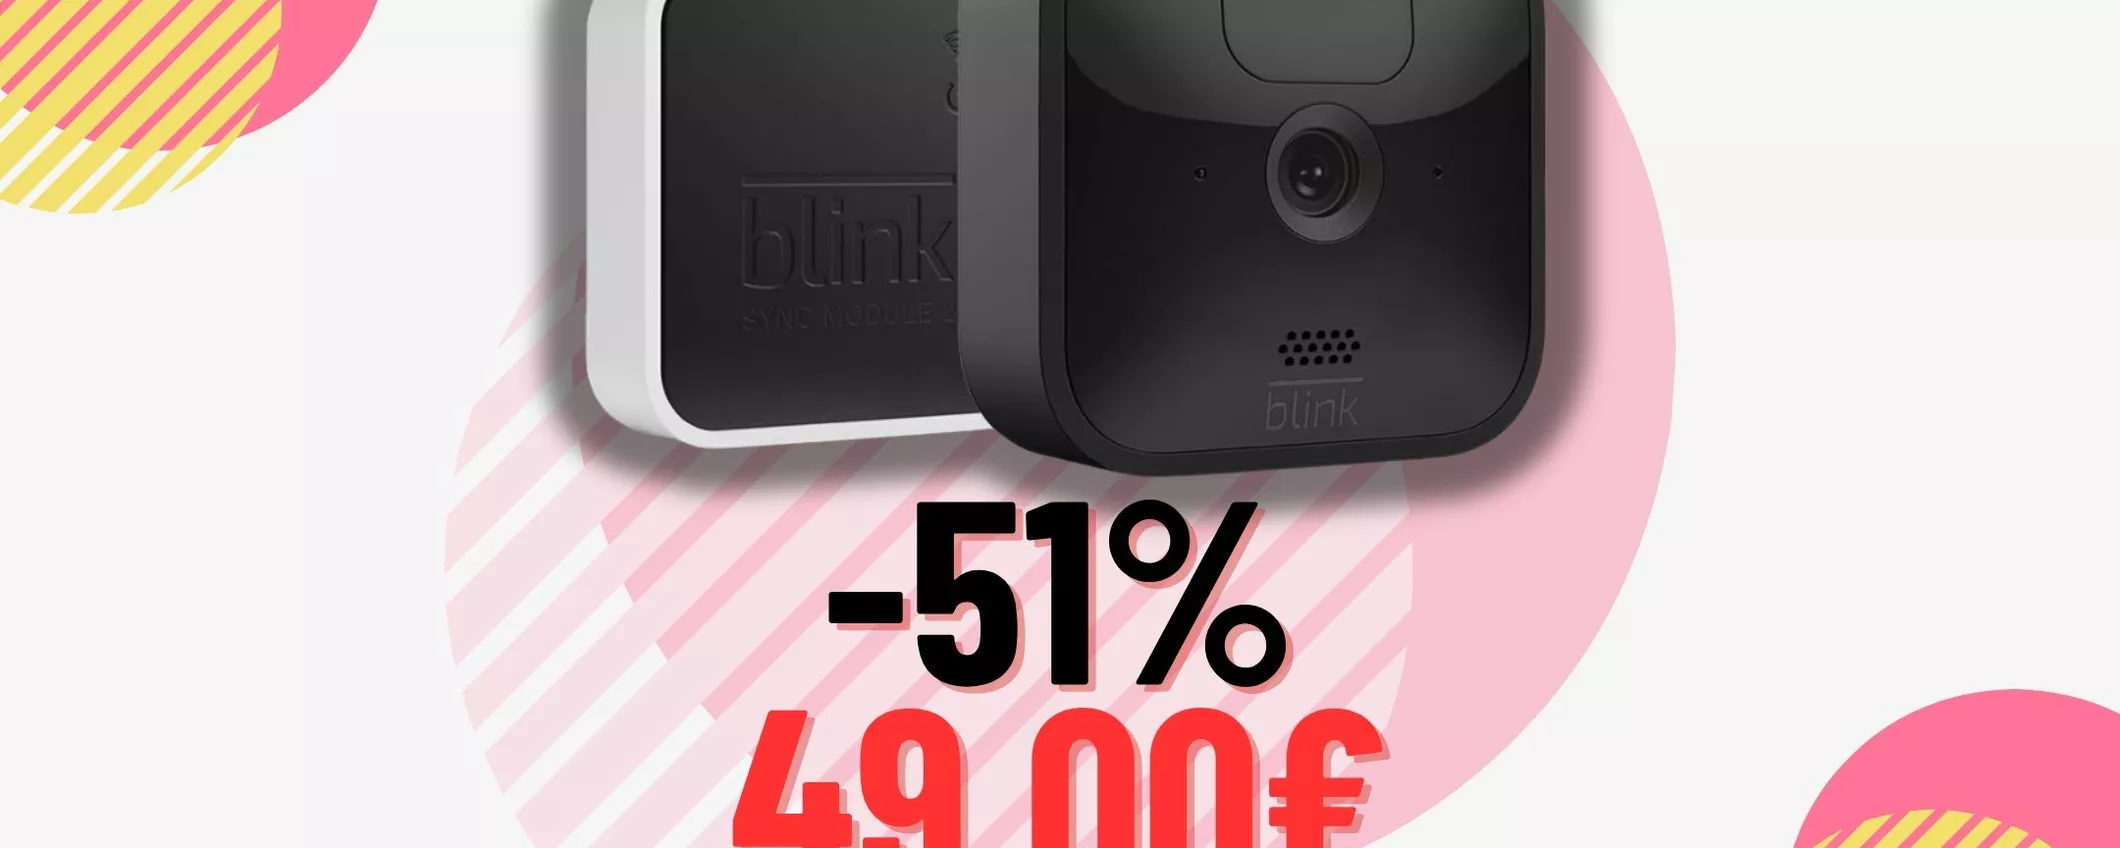 GUARDA IN DIRETTA casa tua: Videocamera Blink Outdoor -51% è REGALATA